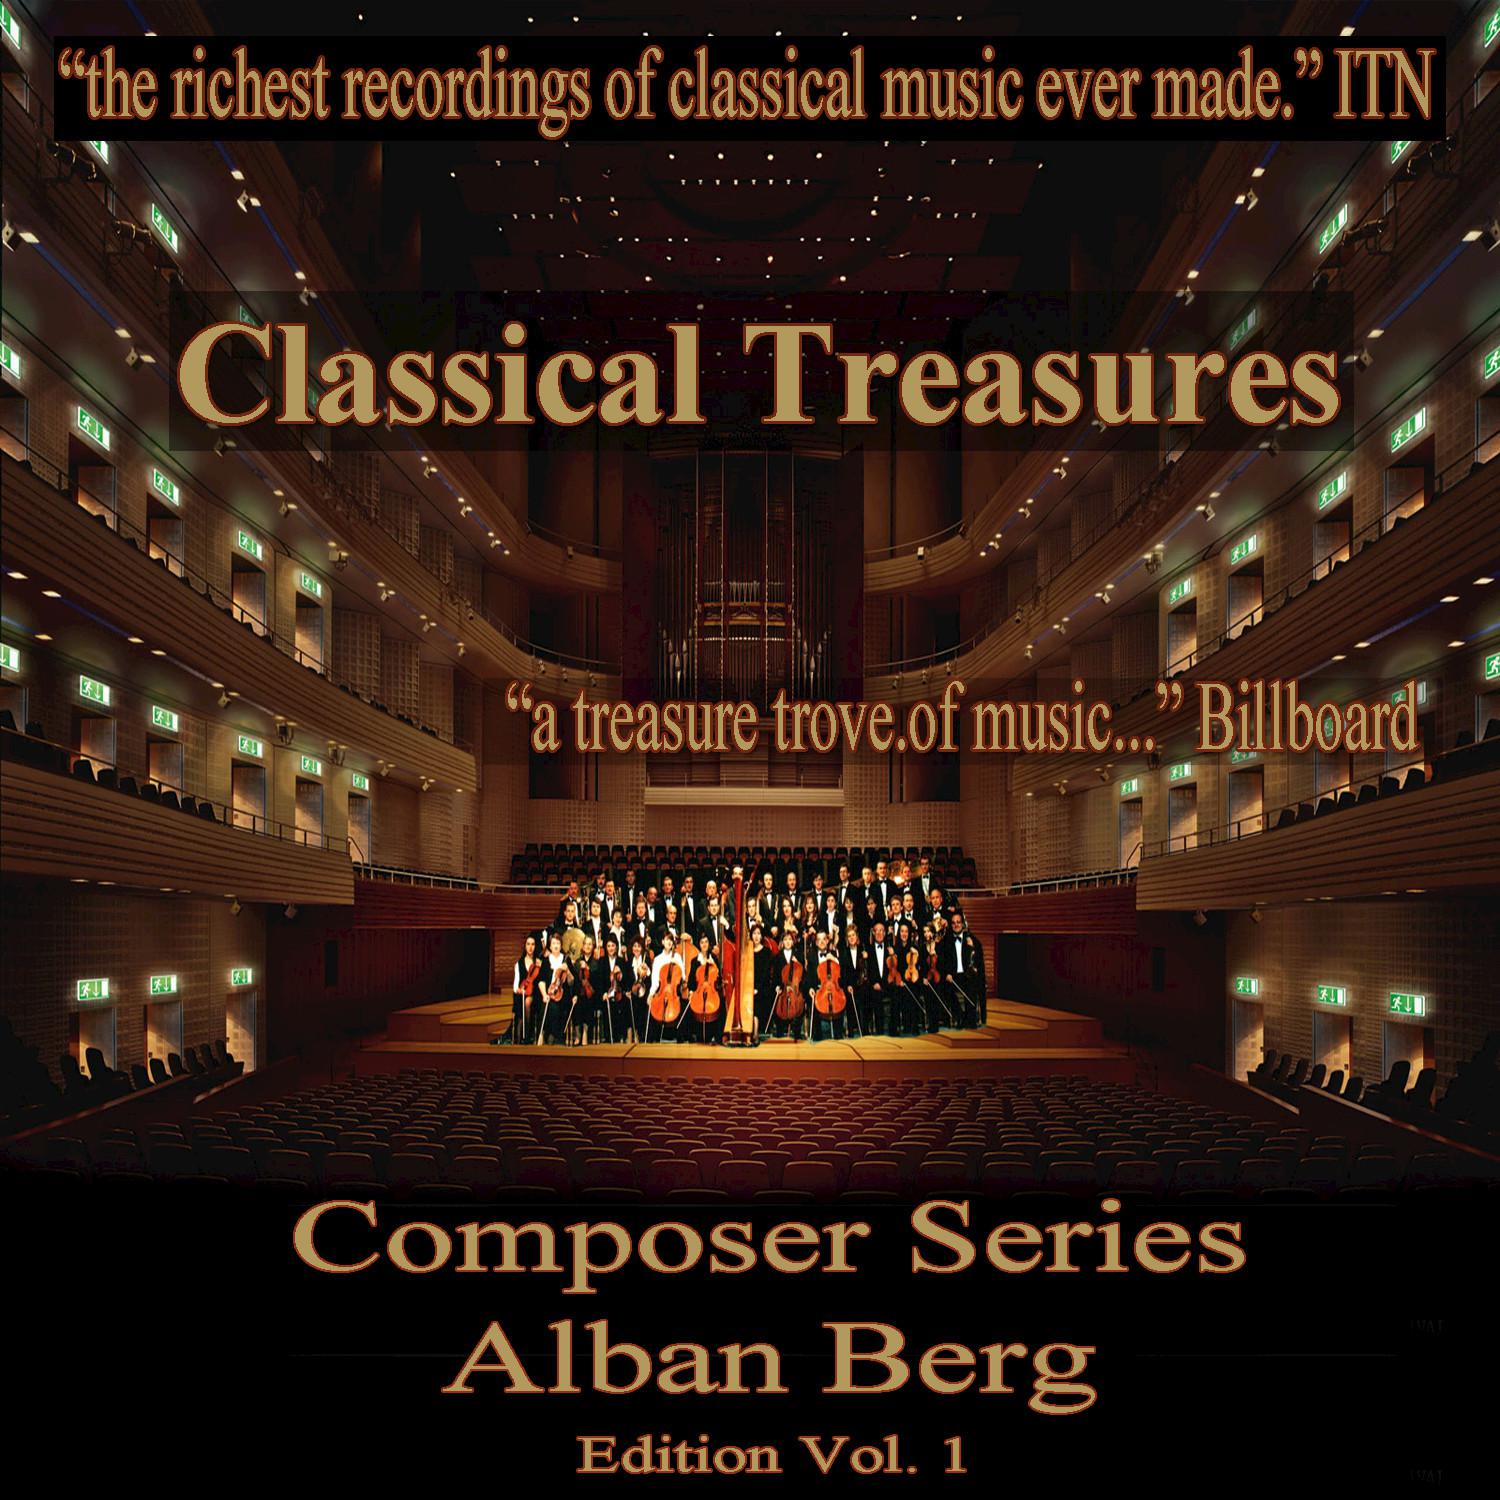 Chamber Concerto for Piano, Violin and 13 Wind Instruments: III. Rondo ri tmico con variazioni